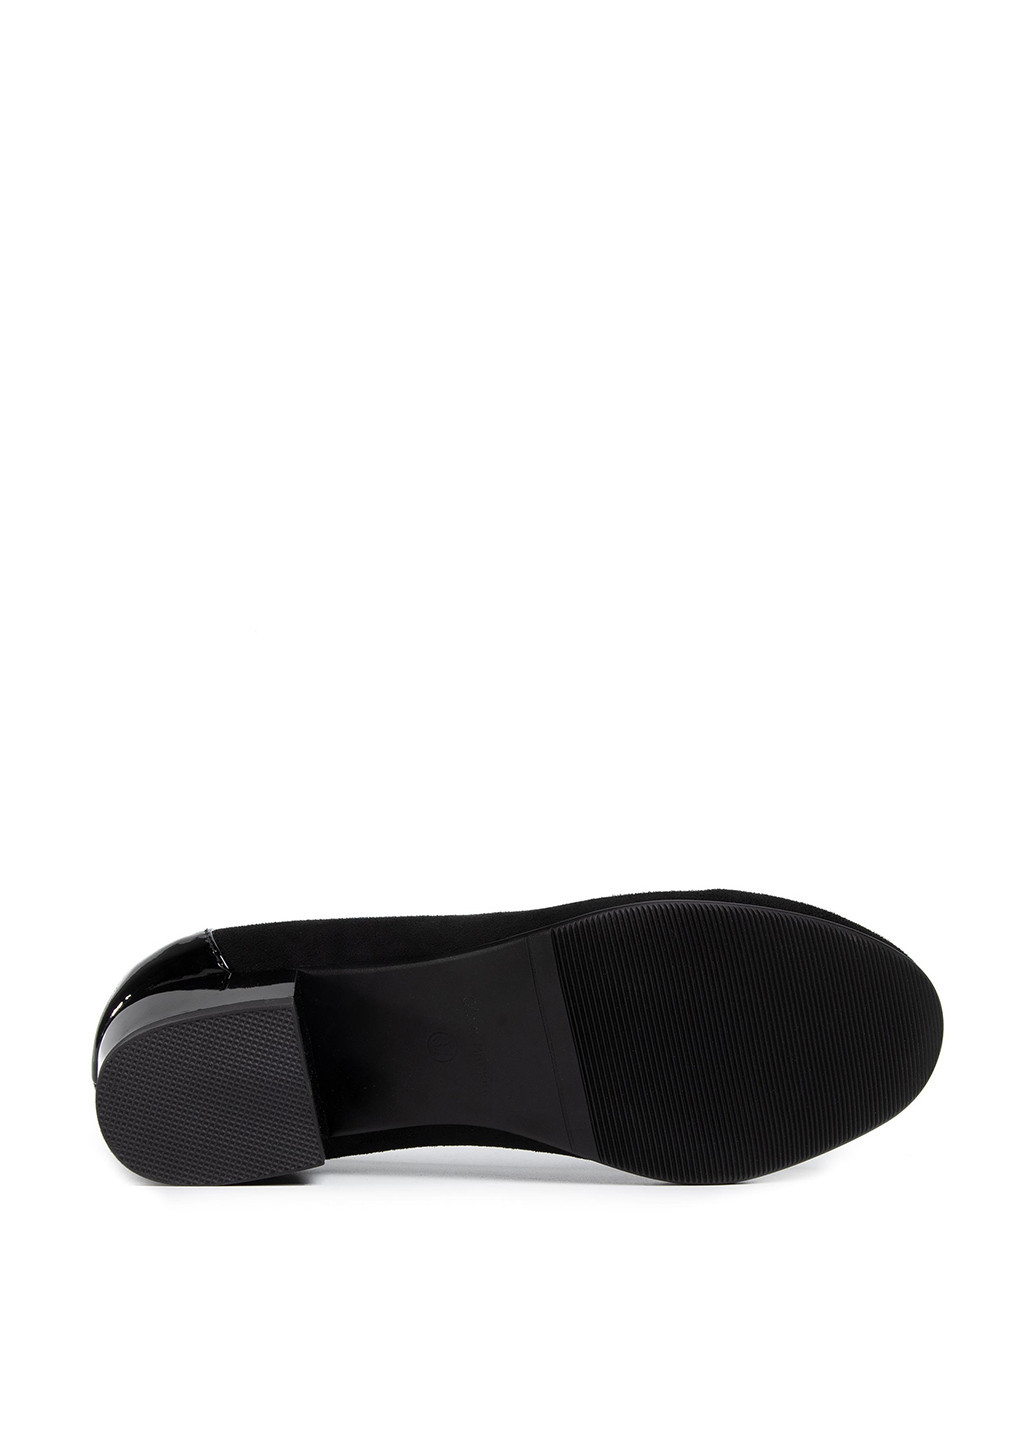 Напівчеревики Clara Barson WS19133-4 Clara Barson туфлі-човники однотонні чорні кежуали